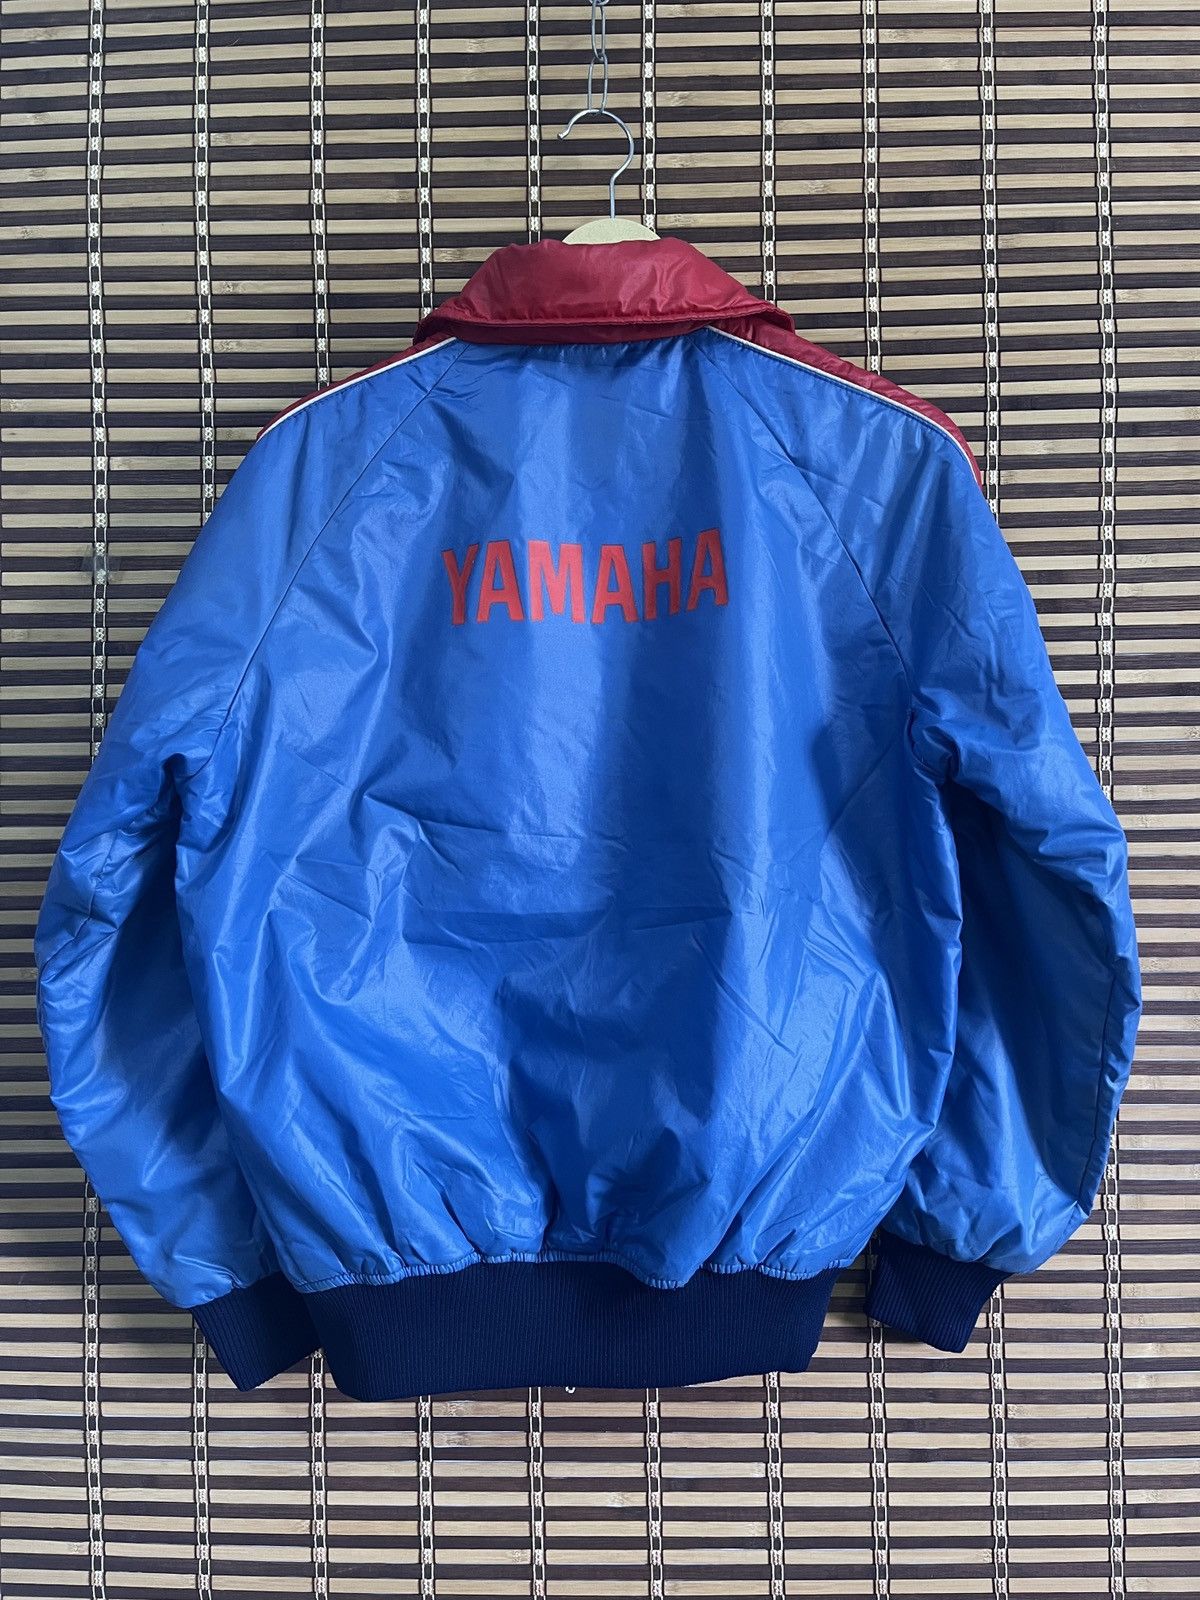 Vintage Yamaha Sweater Light Jacket Full Zipped Japan - 22